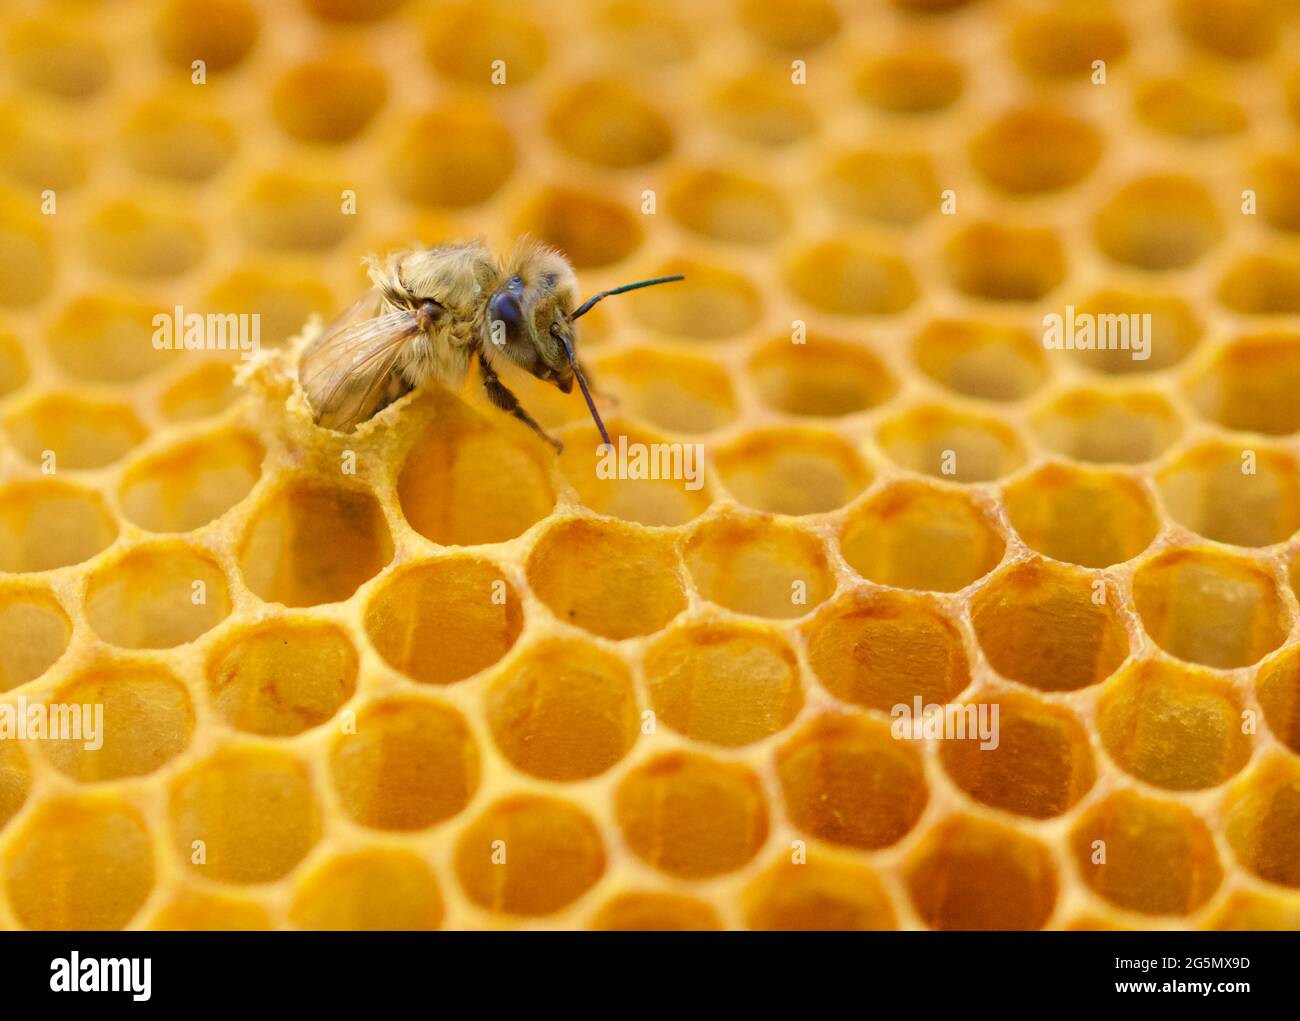 Nahaufnahme der neuen Honigbiene (APIs mellifera), die aus ihrer Brutzelle mit Kopf, Thorax, Vorderbein und einem Teil ihres Flügels außerhalb der Wachszelle hervortritt. Stockfoto